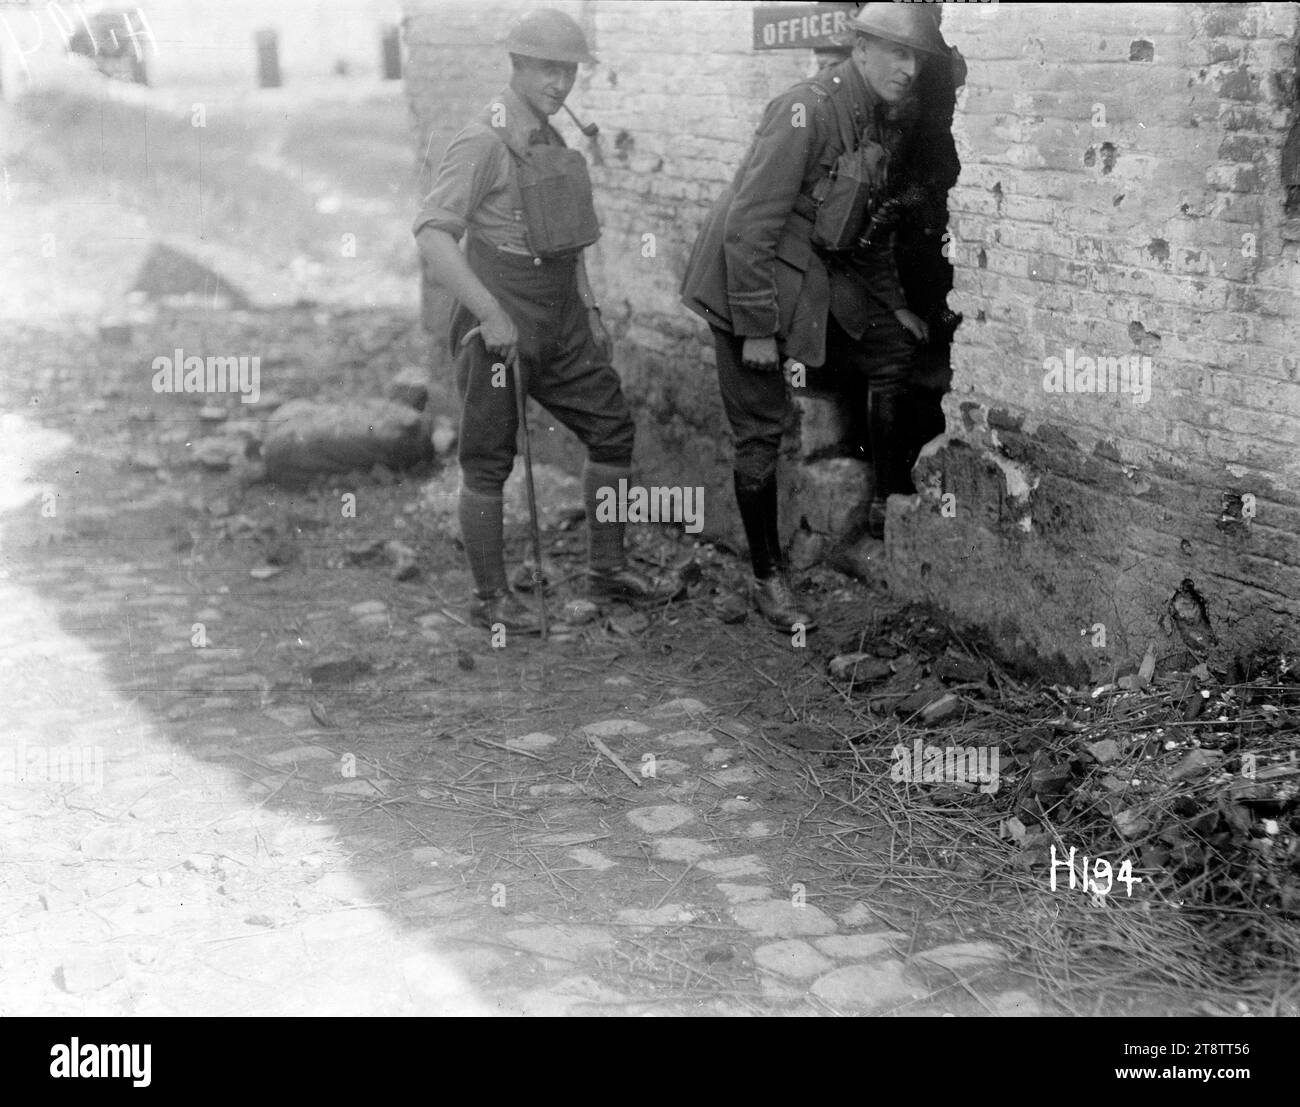 Die New Zealand Howitzer Battery - der Eingang zum Offiziersmesse, zwei Offiziere der New Zealand Howitzer Battery, die in die Offiziere eindringen, durcheinander durch ein Muschelloch in der Wand. Foto vom 18. August 1917 Stockfoto